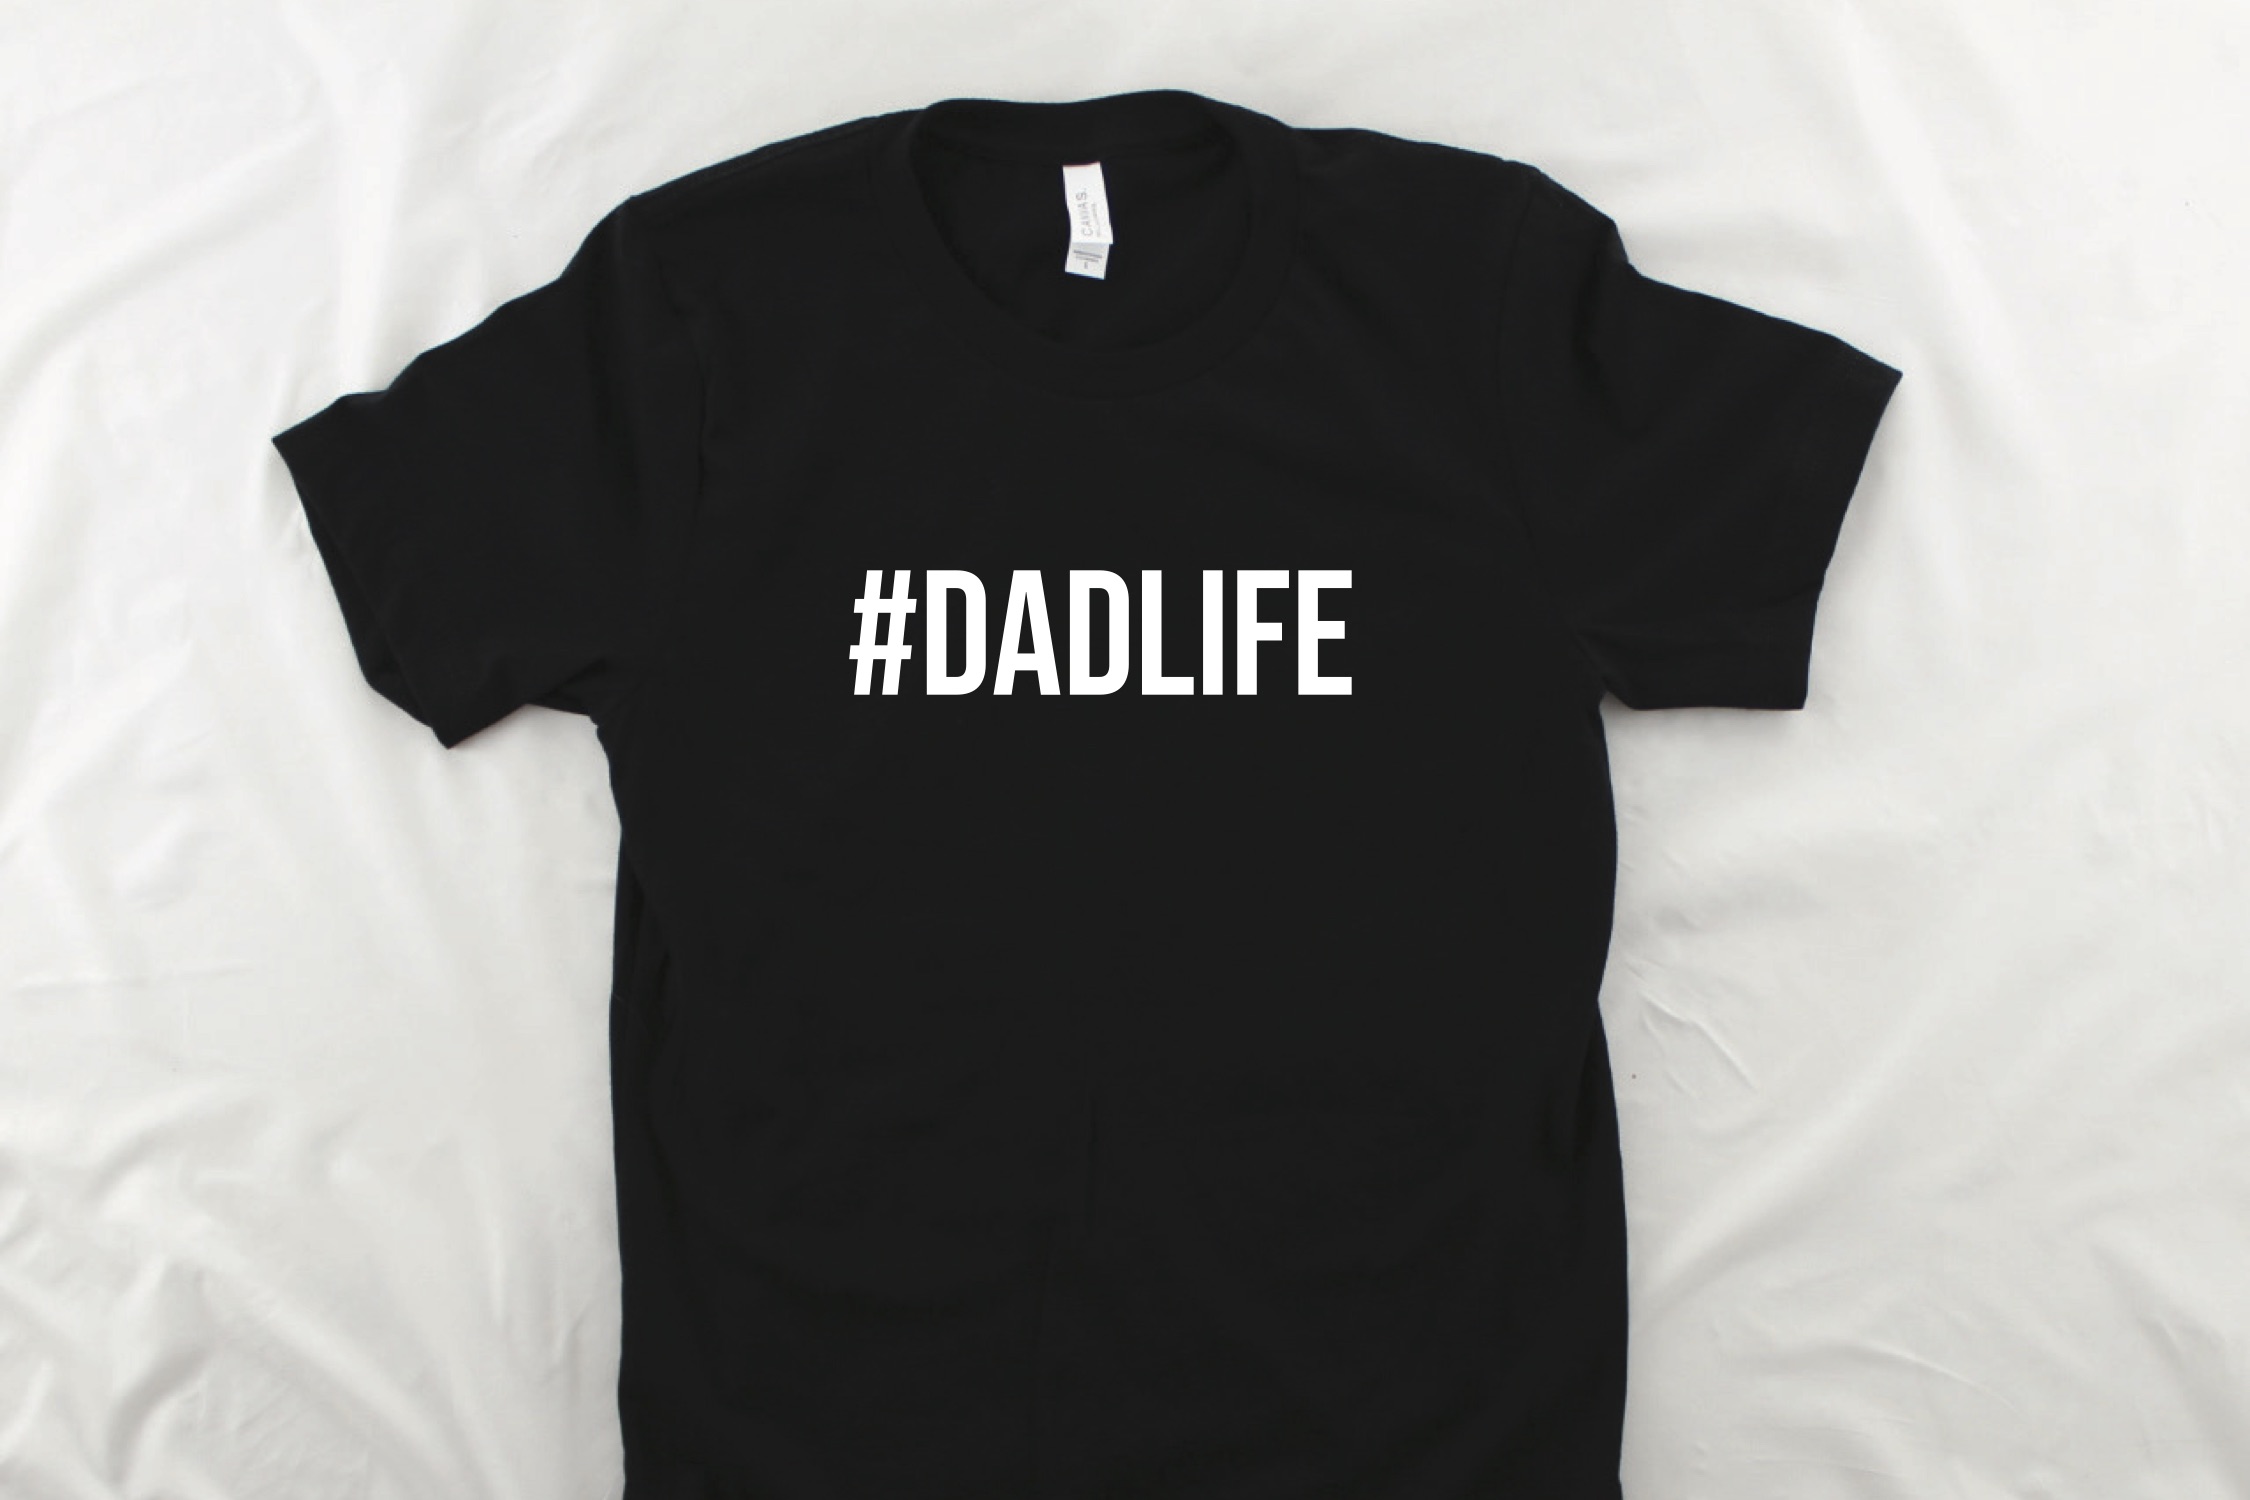 Black #DADLIFE t-shirt